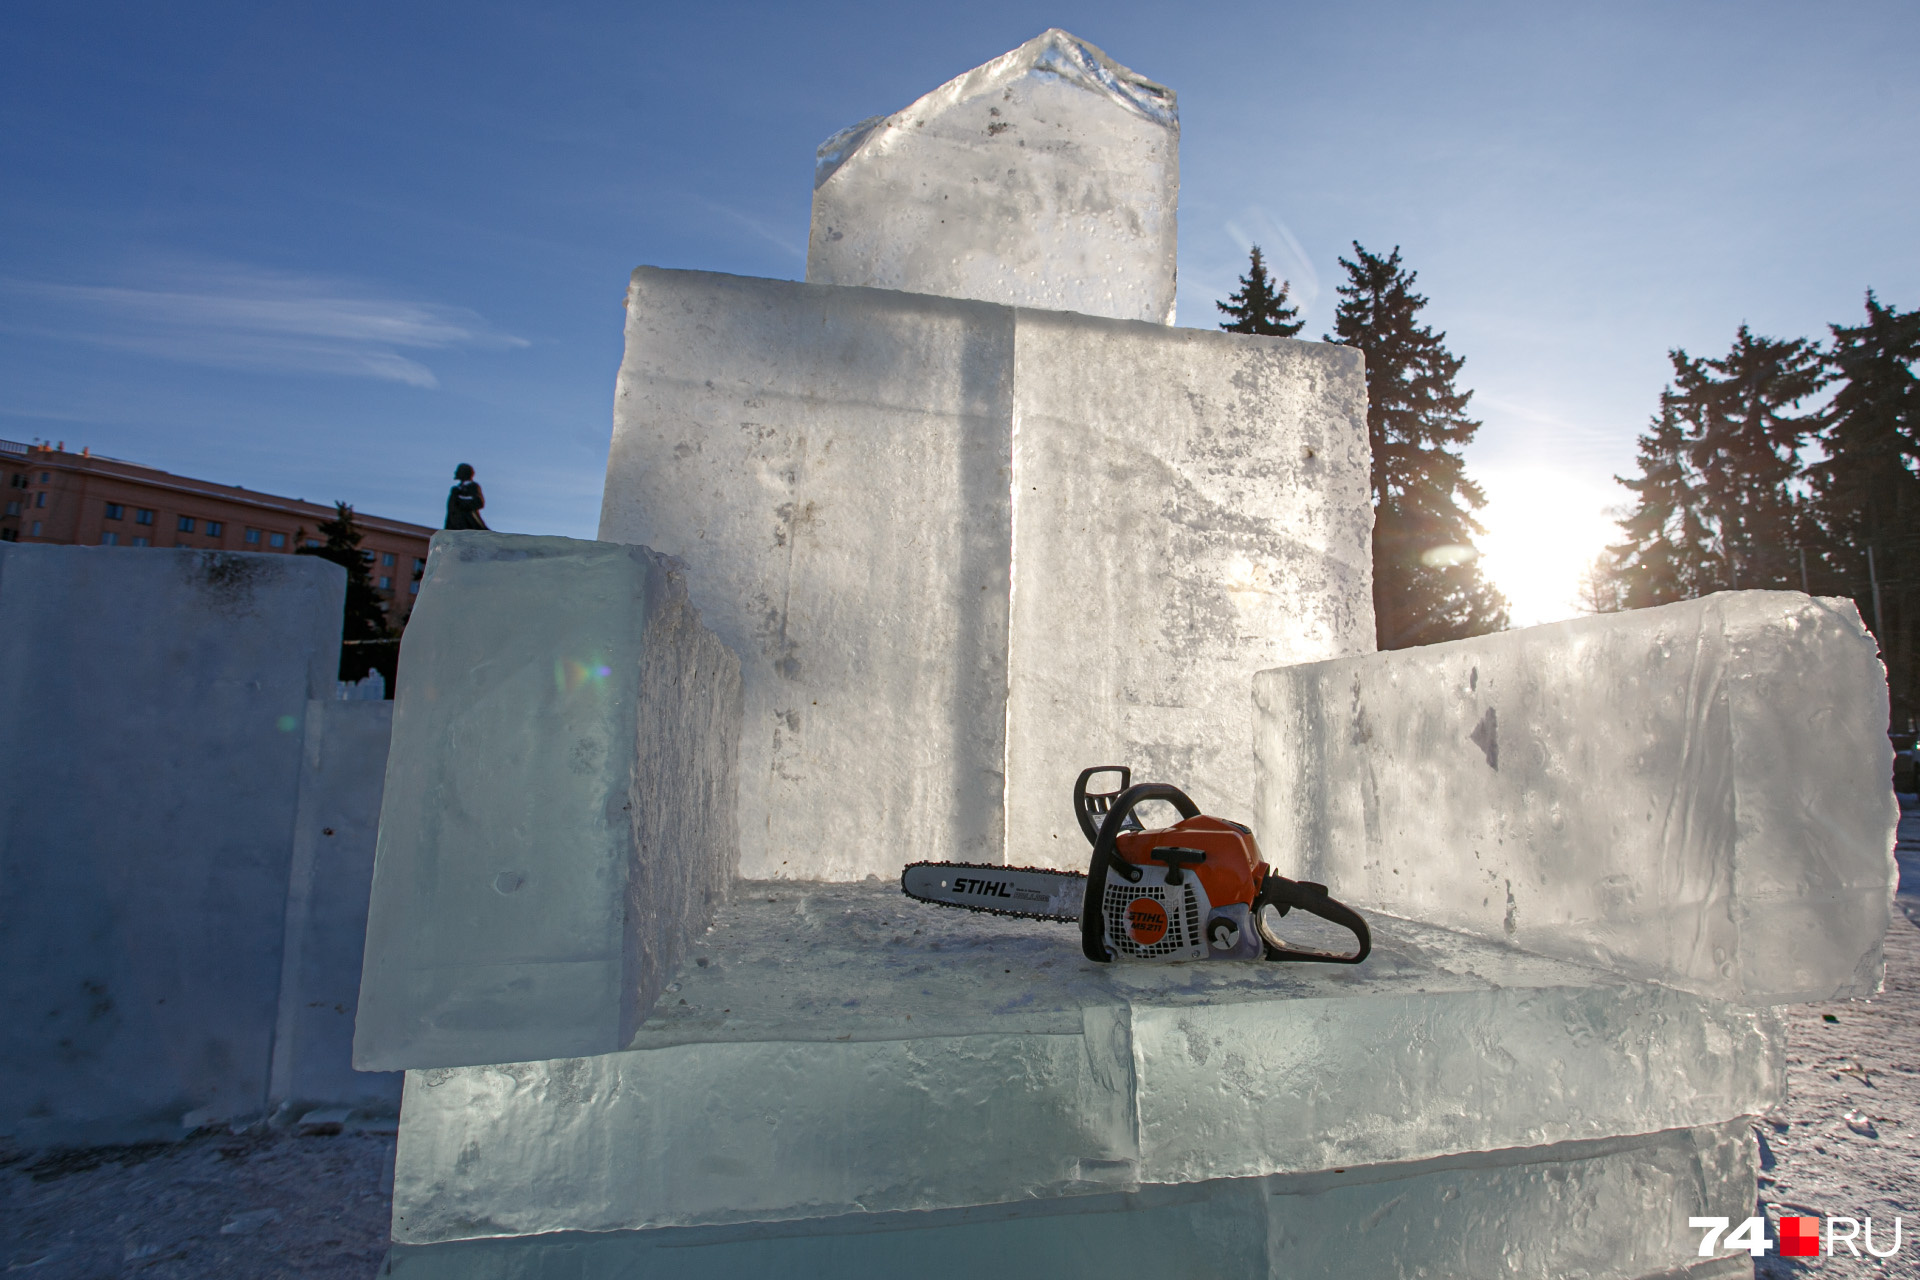 В трон изо льда, видимо, как и в прошлом году, можно будет присесть